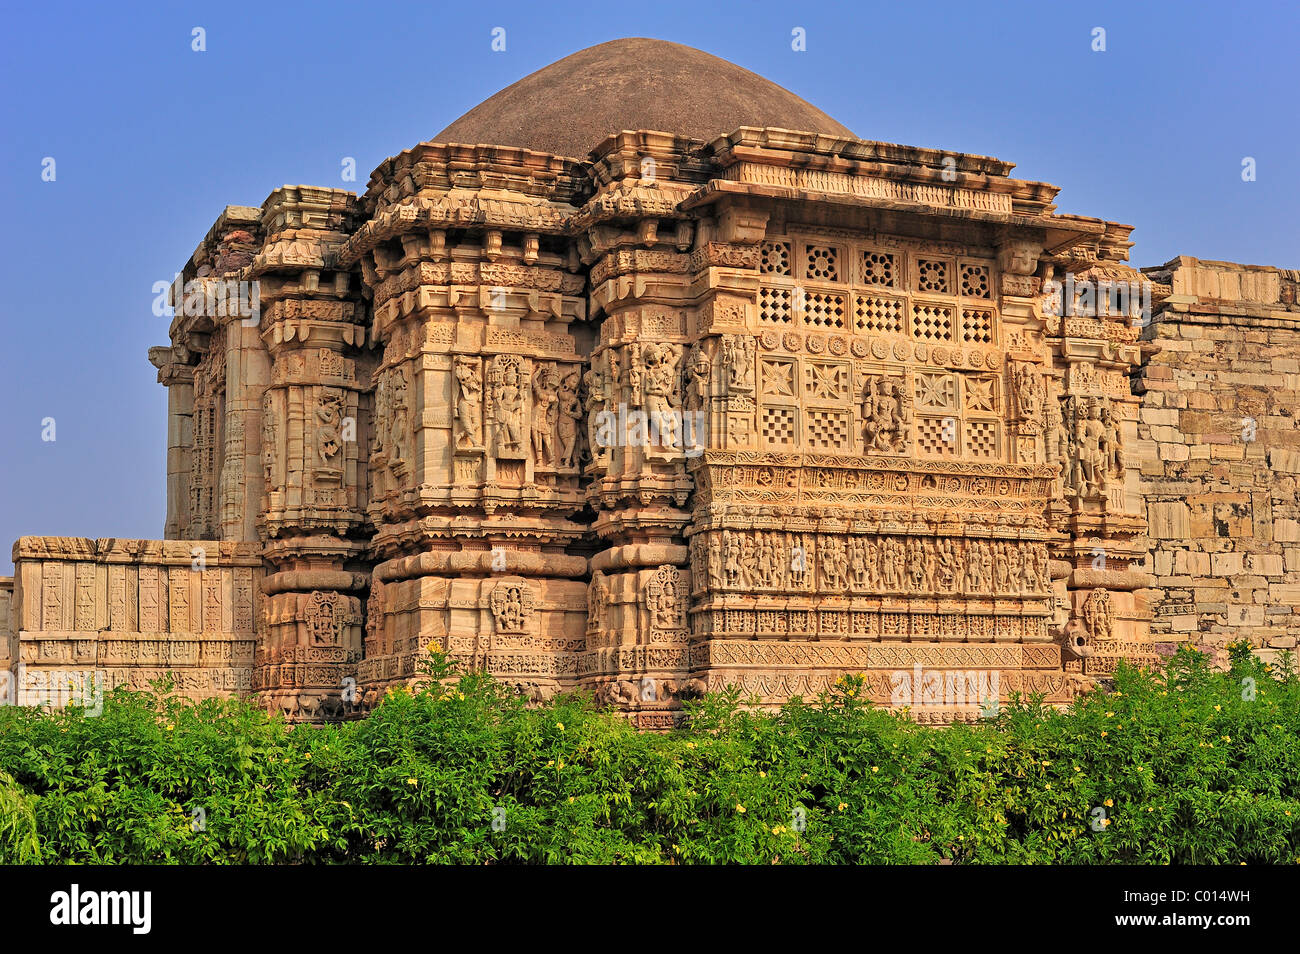 Alten Hindu-Tempel mit Kuppeldach und aufwendigen Schnitzereien an den Außenwänden, Chittorgarh, Rajasthan, Indien, Asien Stockfoto